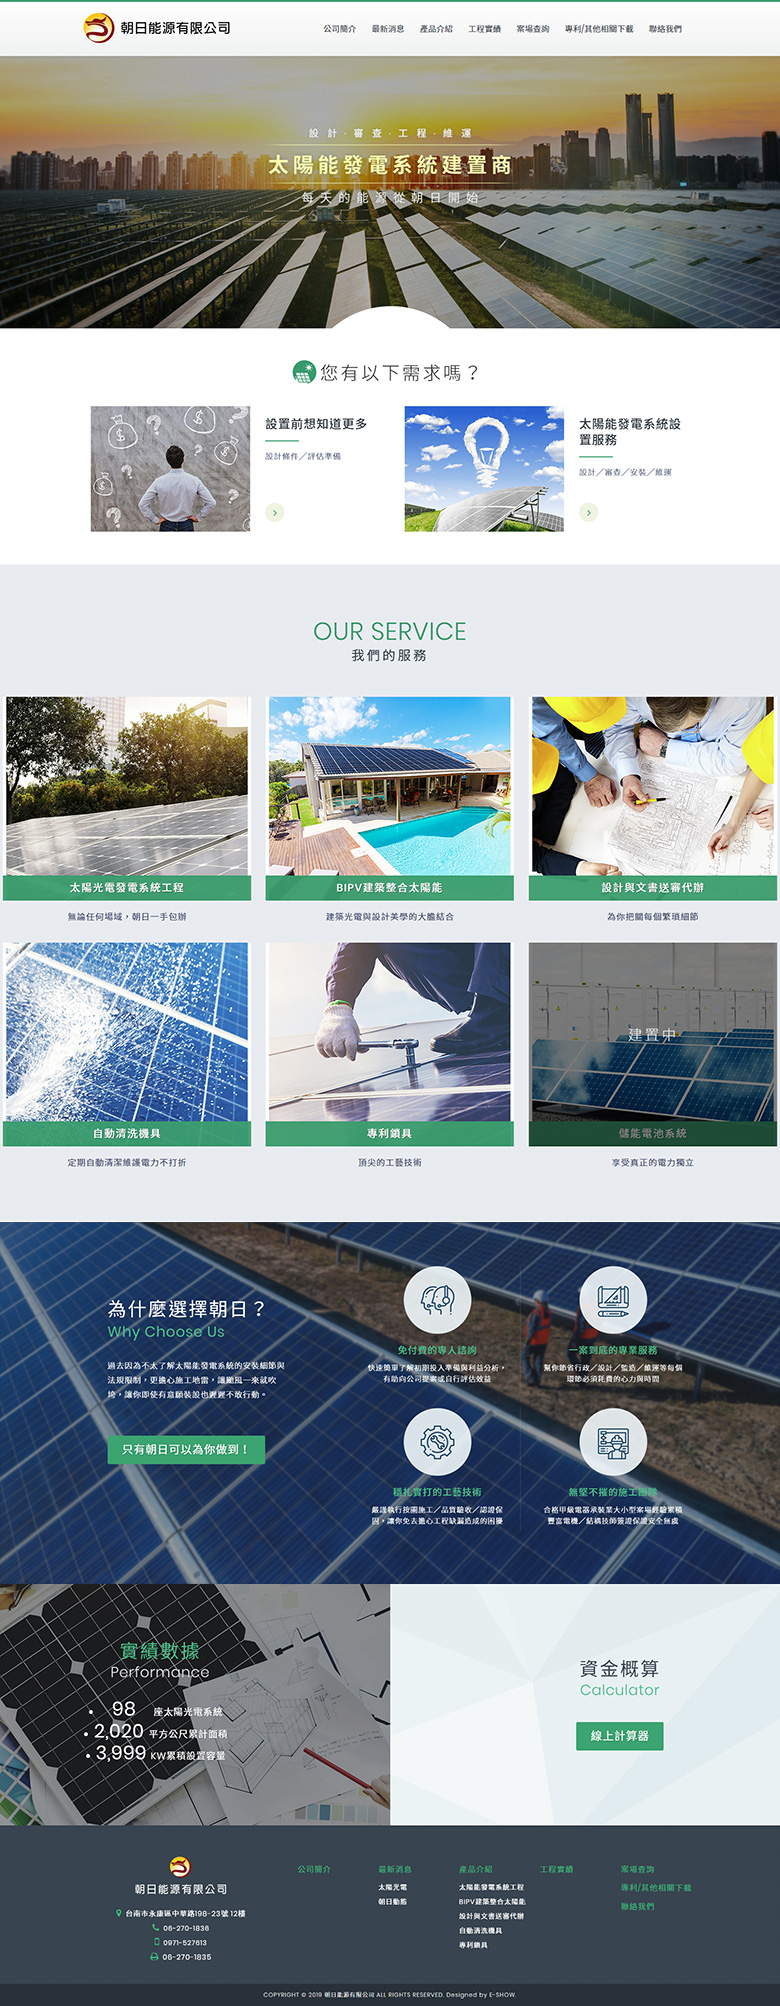 朝日能源有限公司 響應式企業網站設計
